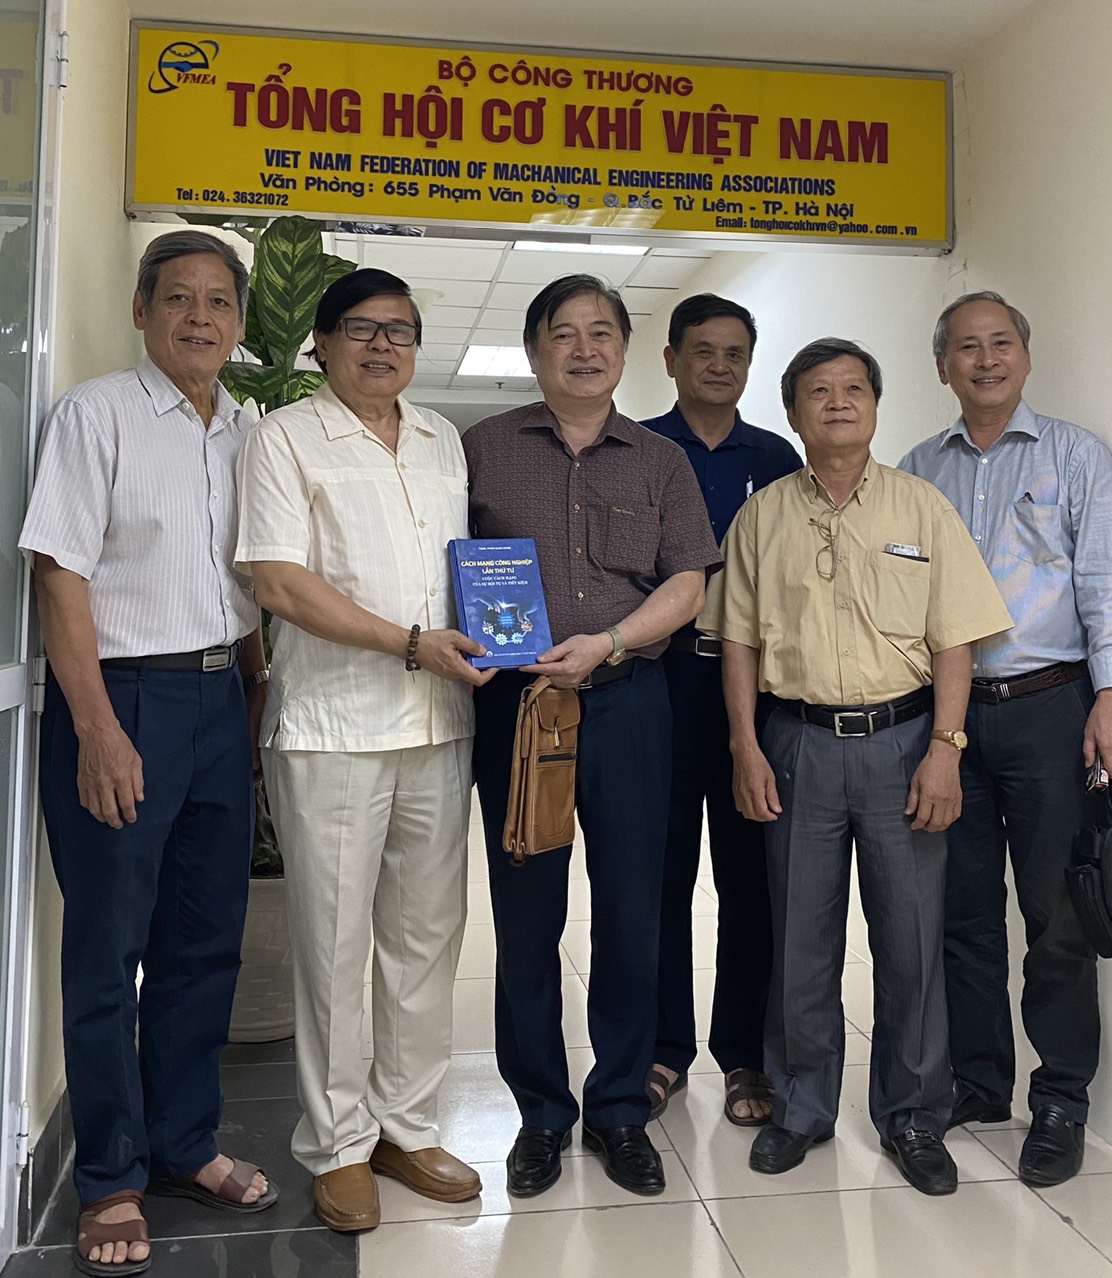 Tổng hội Cơ khí Việt Nam: Khơi dậy khát vọng vươn lên xây dựng ngành Cơ khí vững mạnh